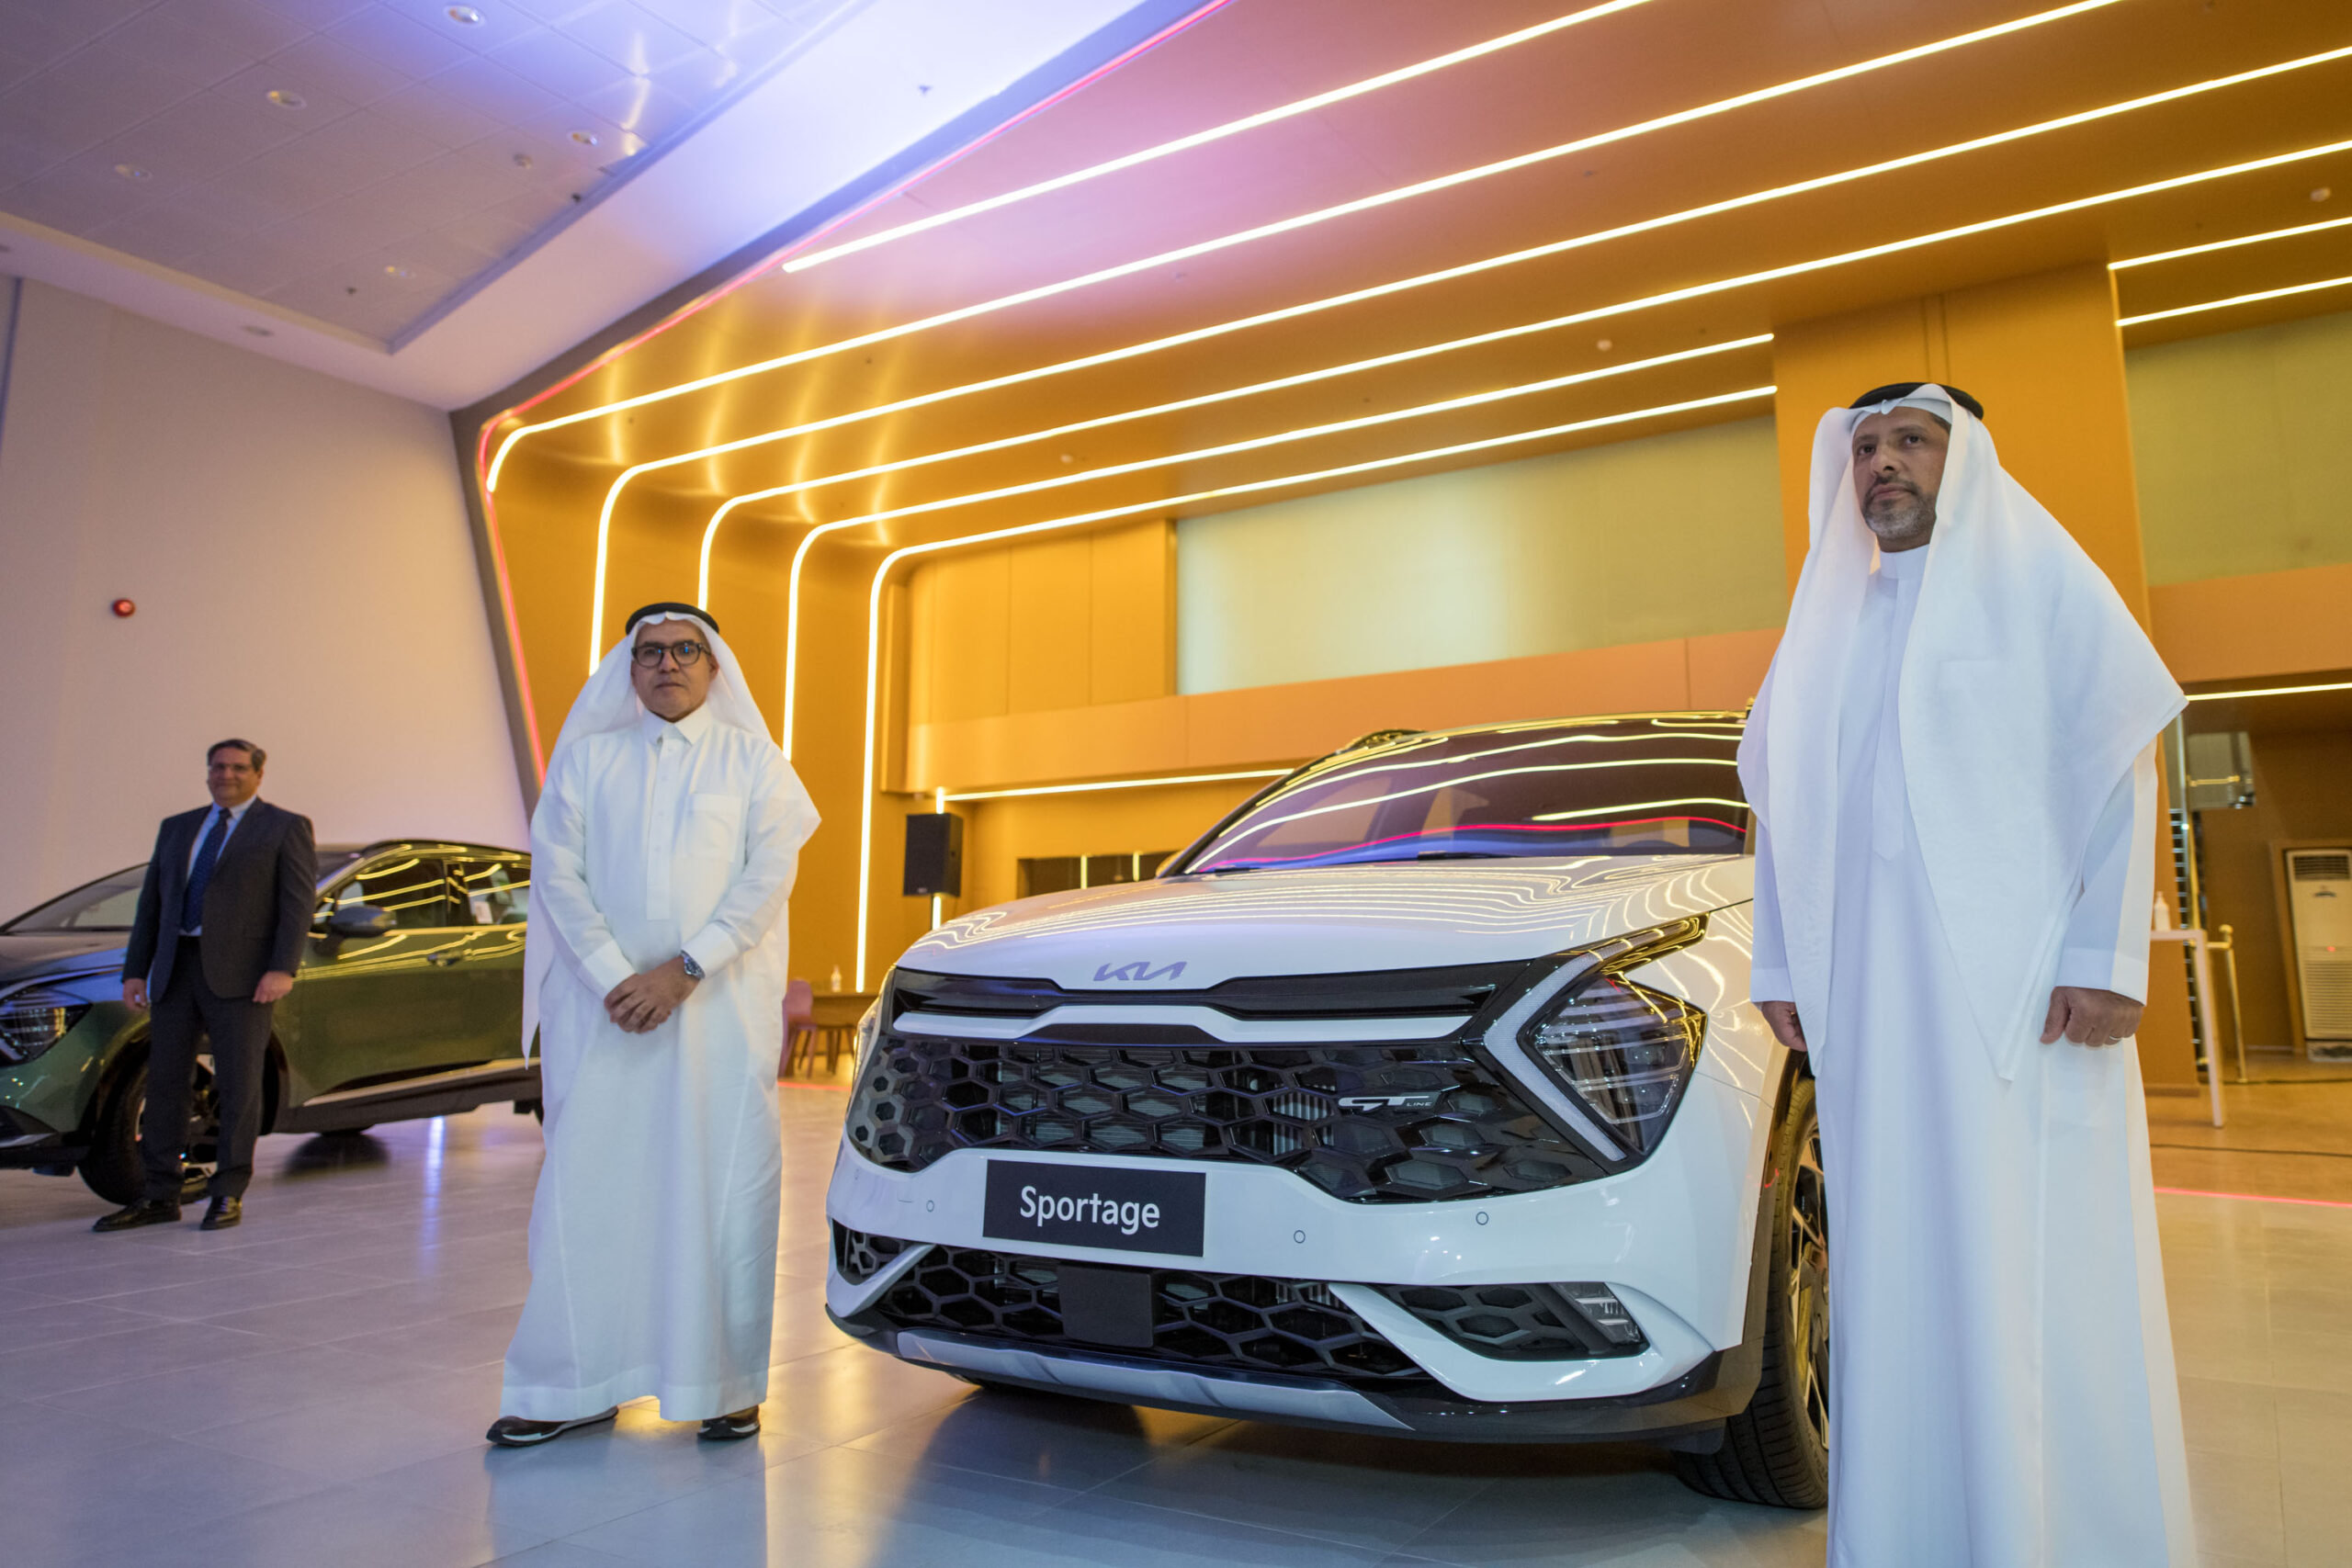 "كيا الجبر" تدشن الجيل الخامس من سيارة سبورتج في الرياض في حفل احتضنه معرضها في البديعة وسط حضور كبير 9